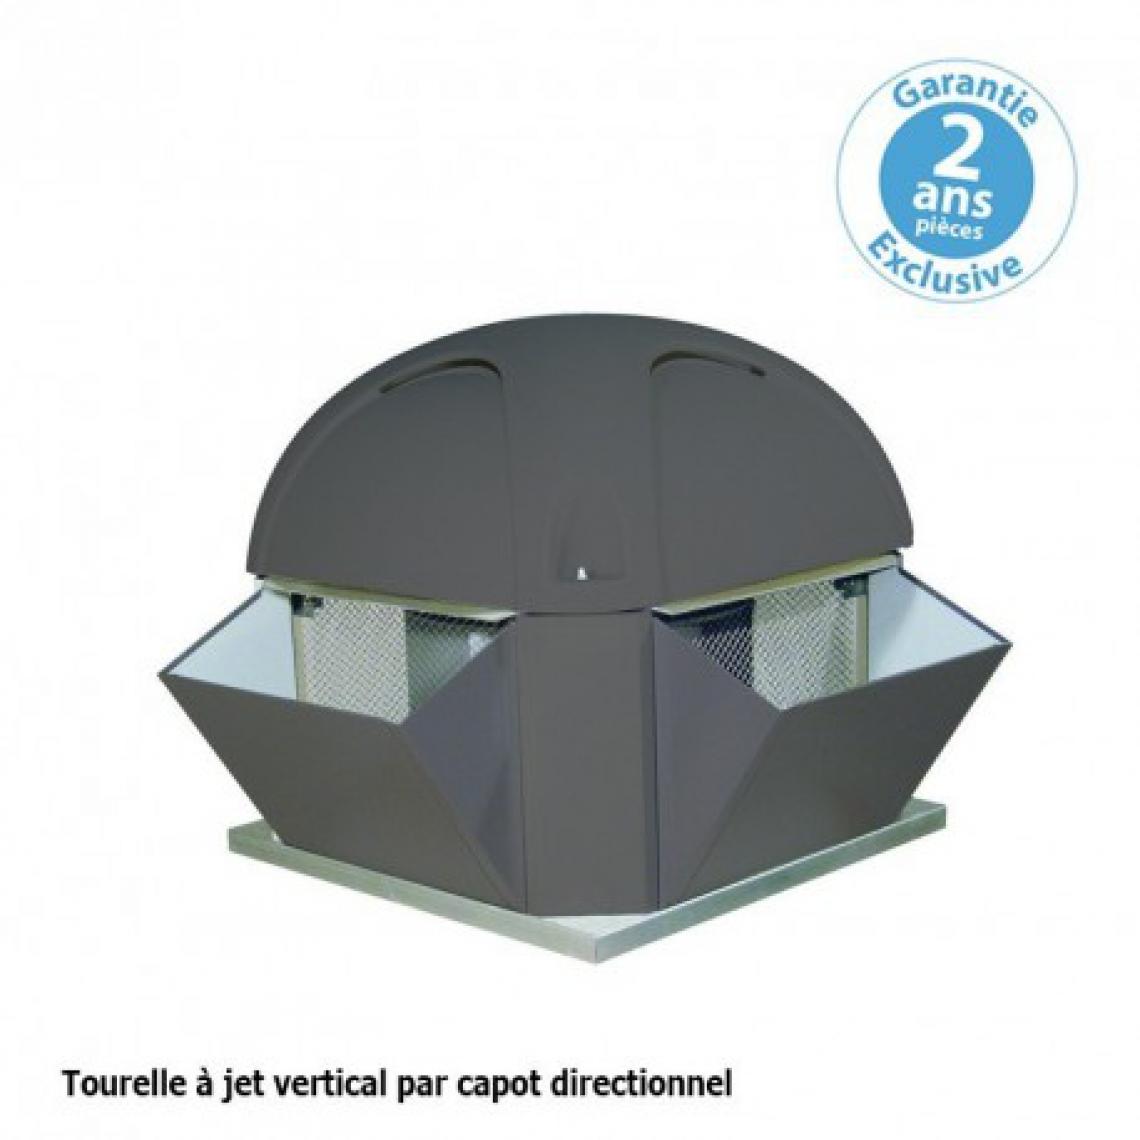 Furnotel - Tourelle 2 vitesses - triphasée - refoulement vertical - 8000 m³ / h sous 220 Pa - - VMC, Ventilation